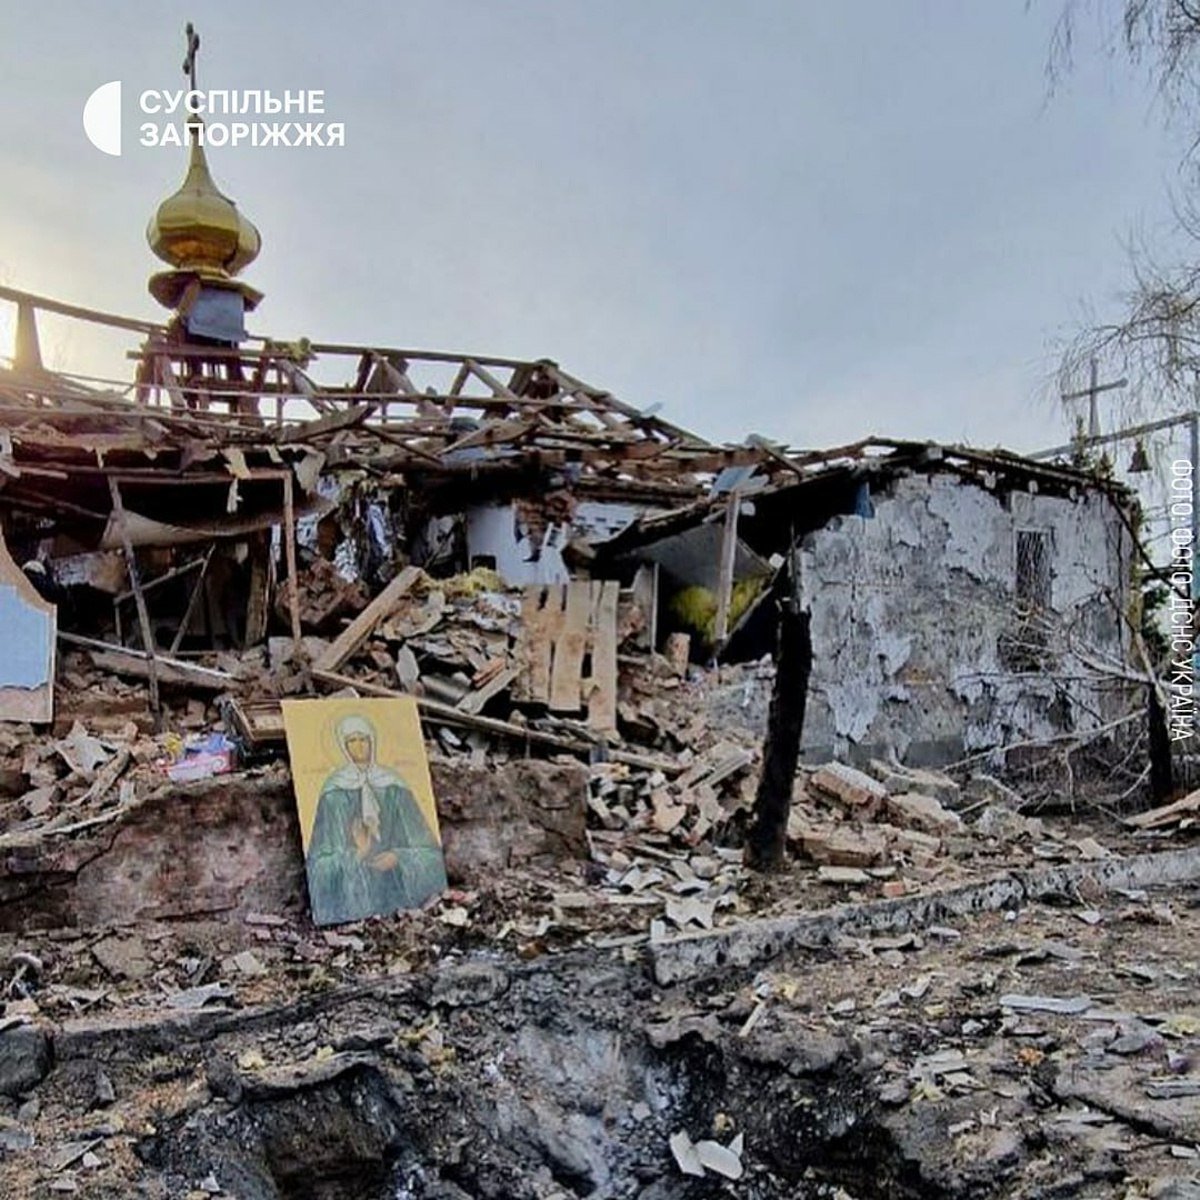 Руины церкви, обстрелянной российской стороной из зенитно-ракетных систем, Запорожская область. Фото: Суспiльне Запорiжжя